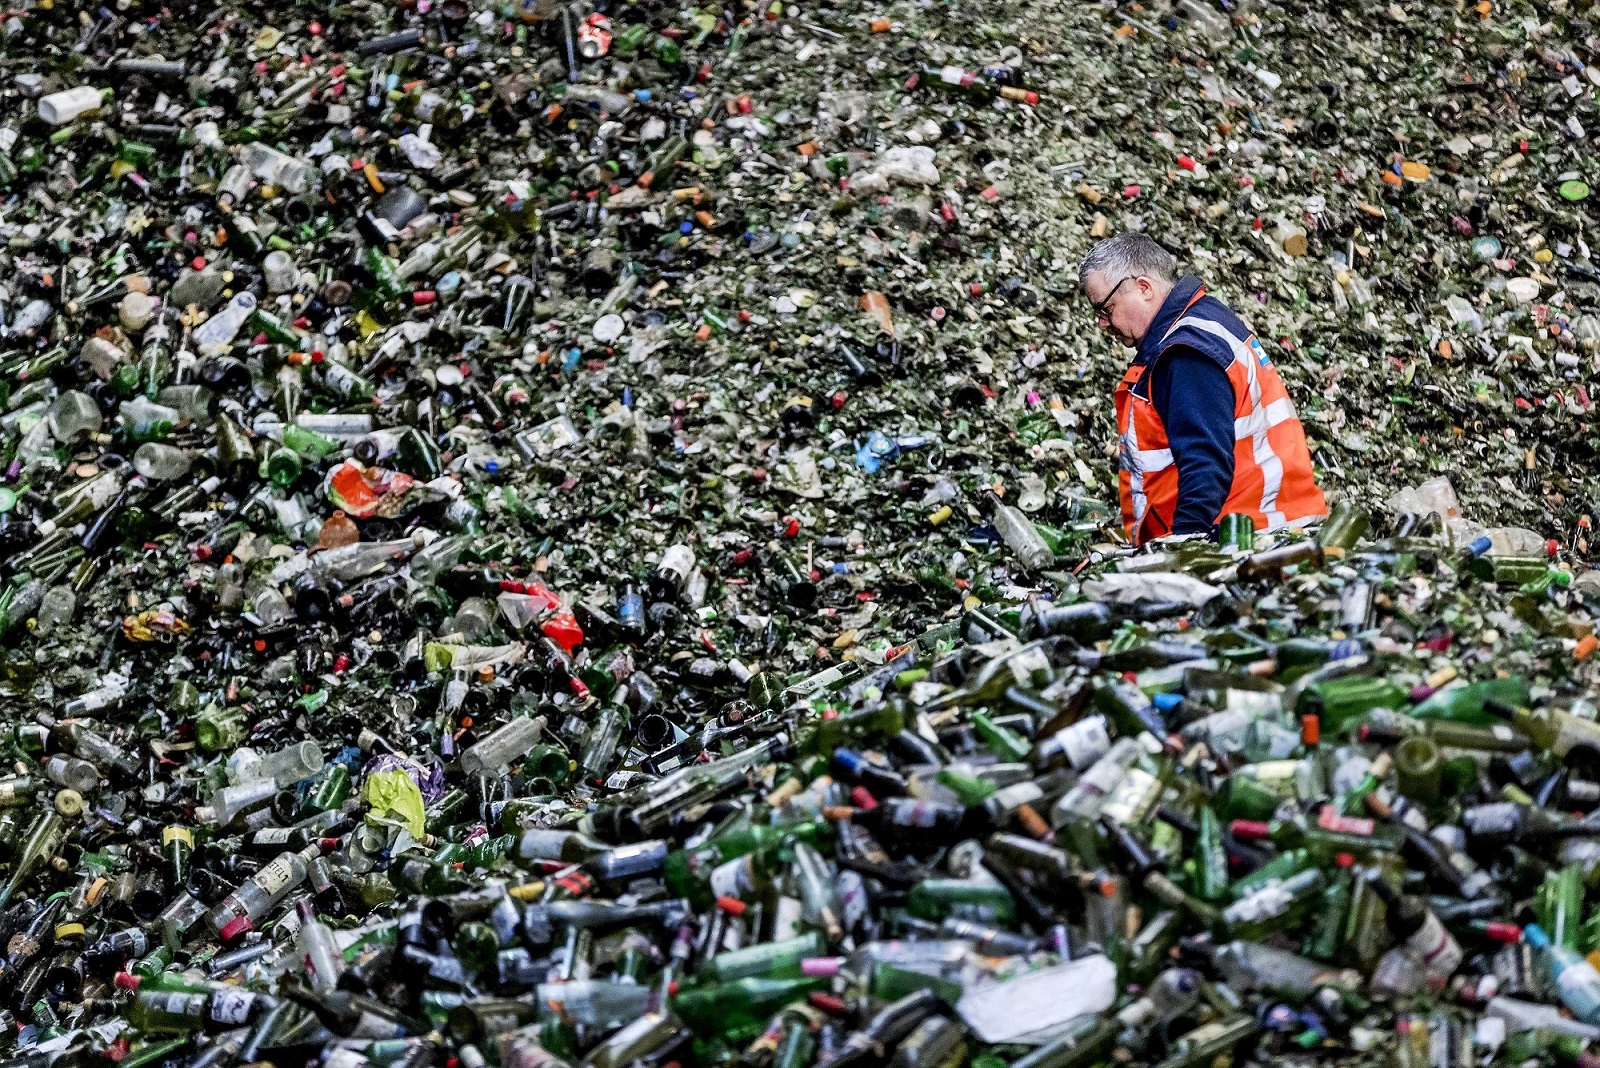 Una montaña de botellas esperan para ser procesadas en la planta de reciclado. EFE/Archivo. Remko De Waal